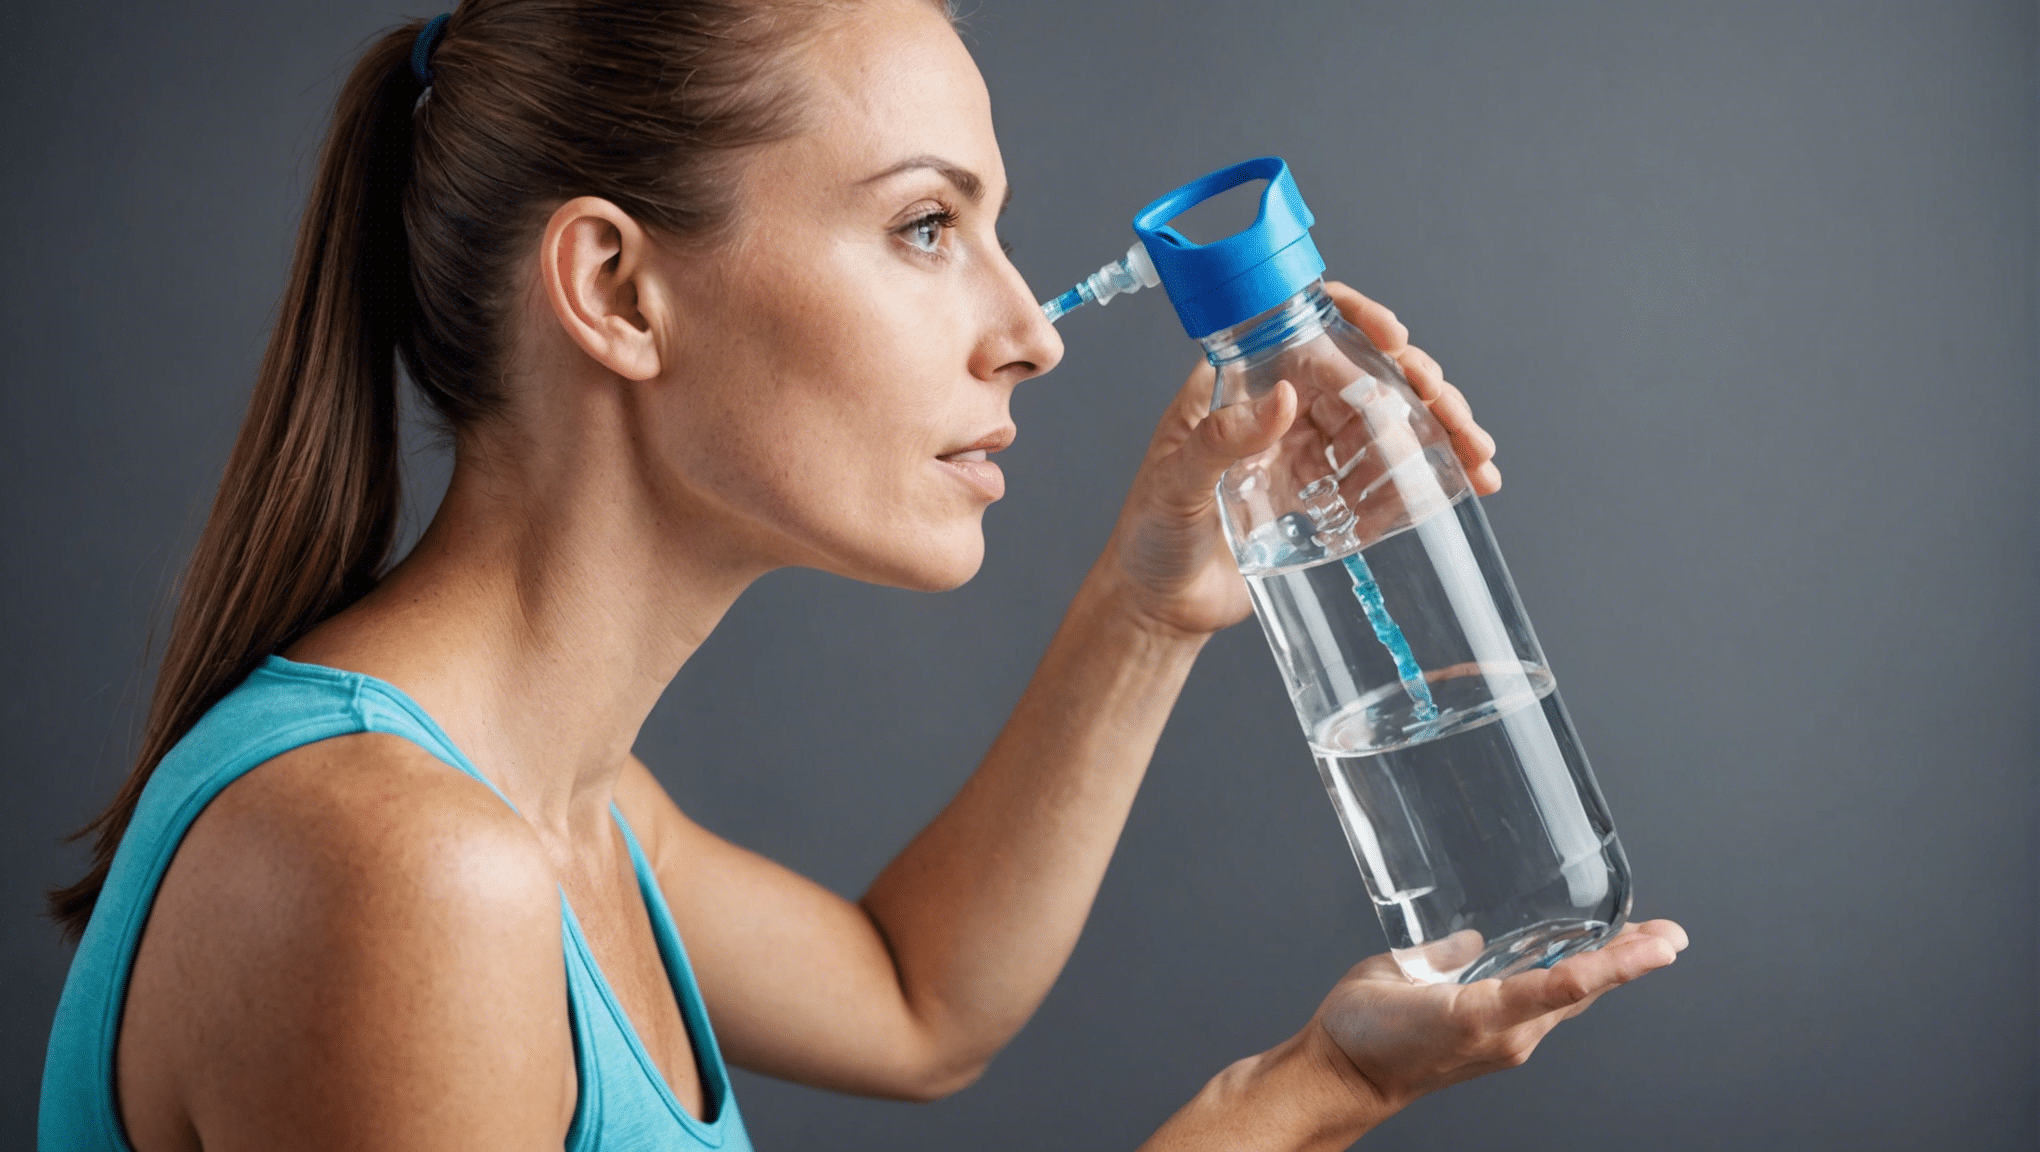 découvrez des conseils pratique pour assurer une hydratation adéquate dans votre quotidien.